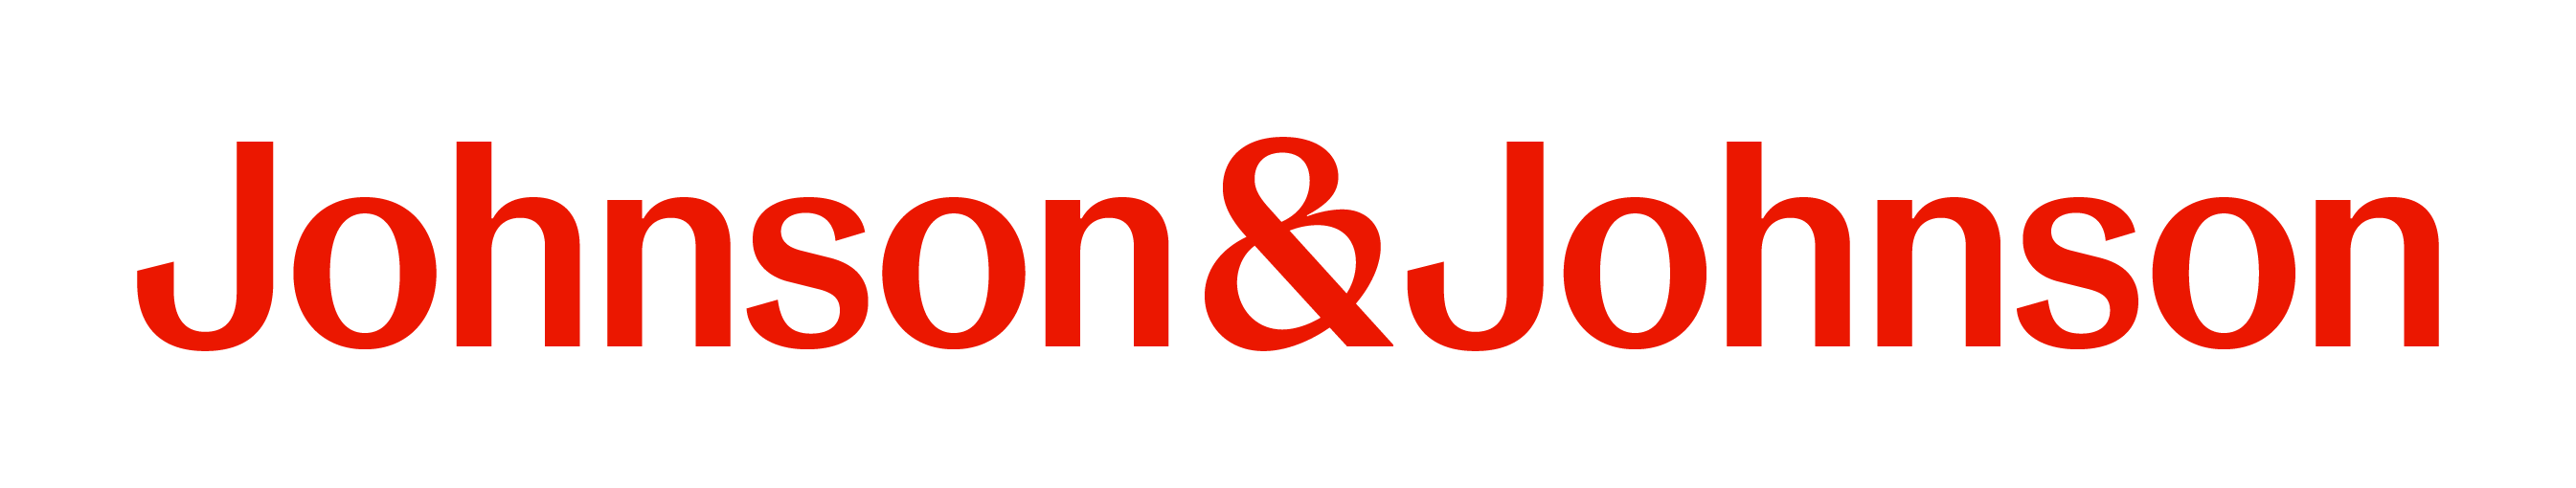 Johnson & Johnson company image